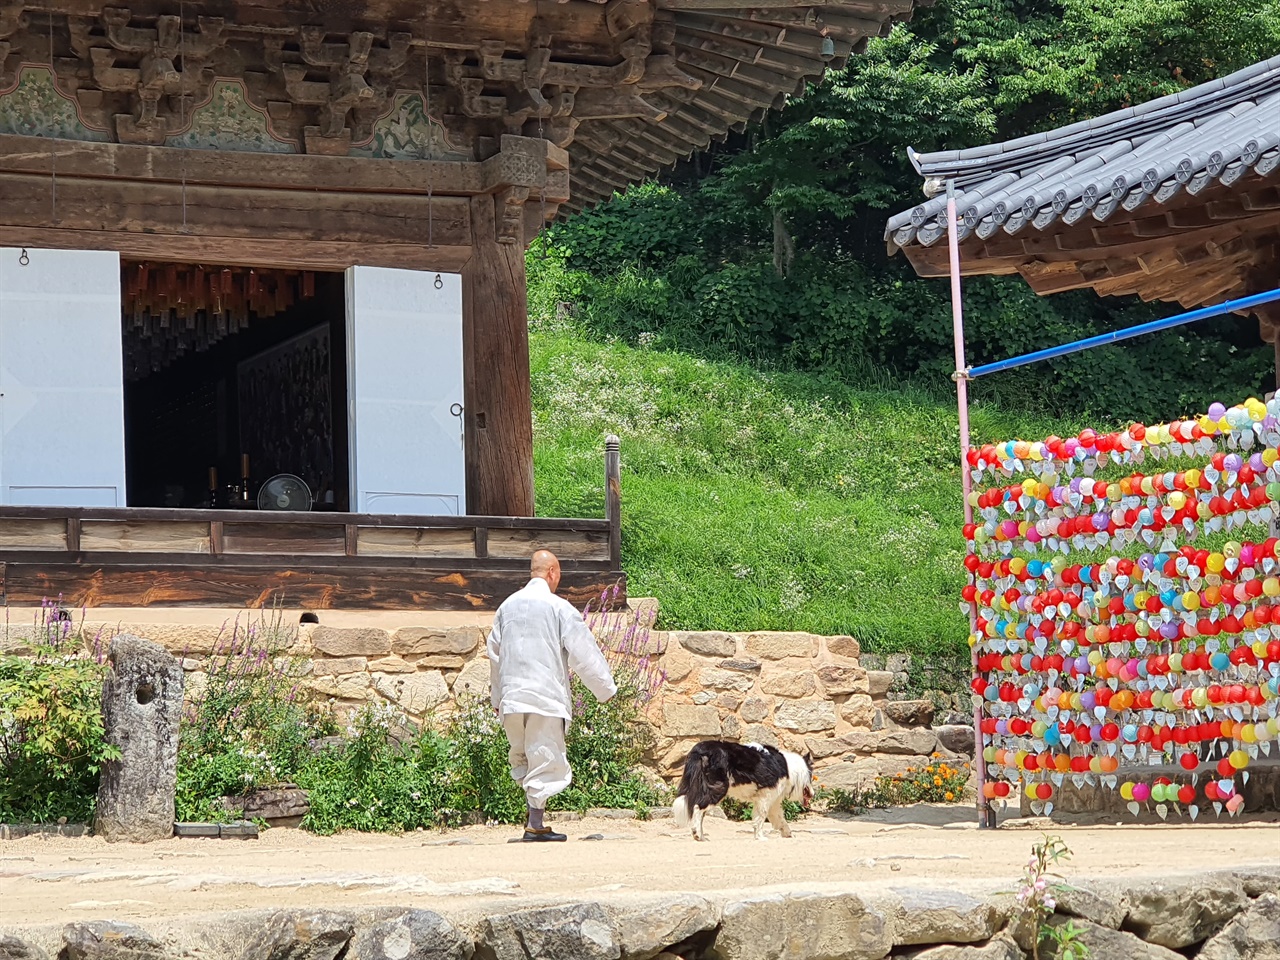 염천의 빗살무늬 마당을 가로지르는 스님은 할아버지 견을 따라가고 있다.